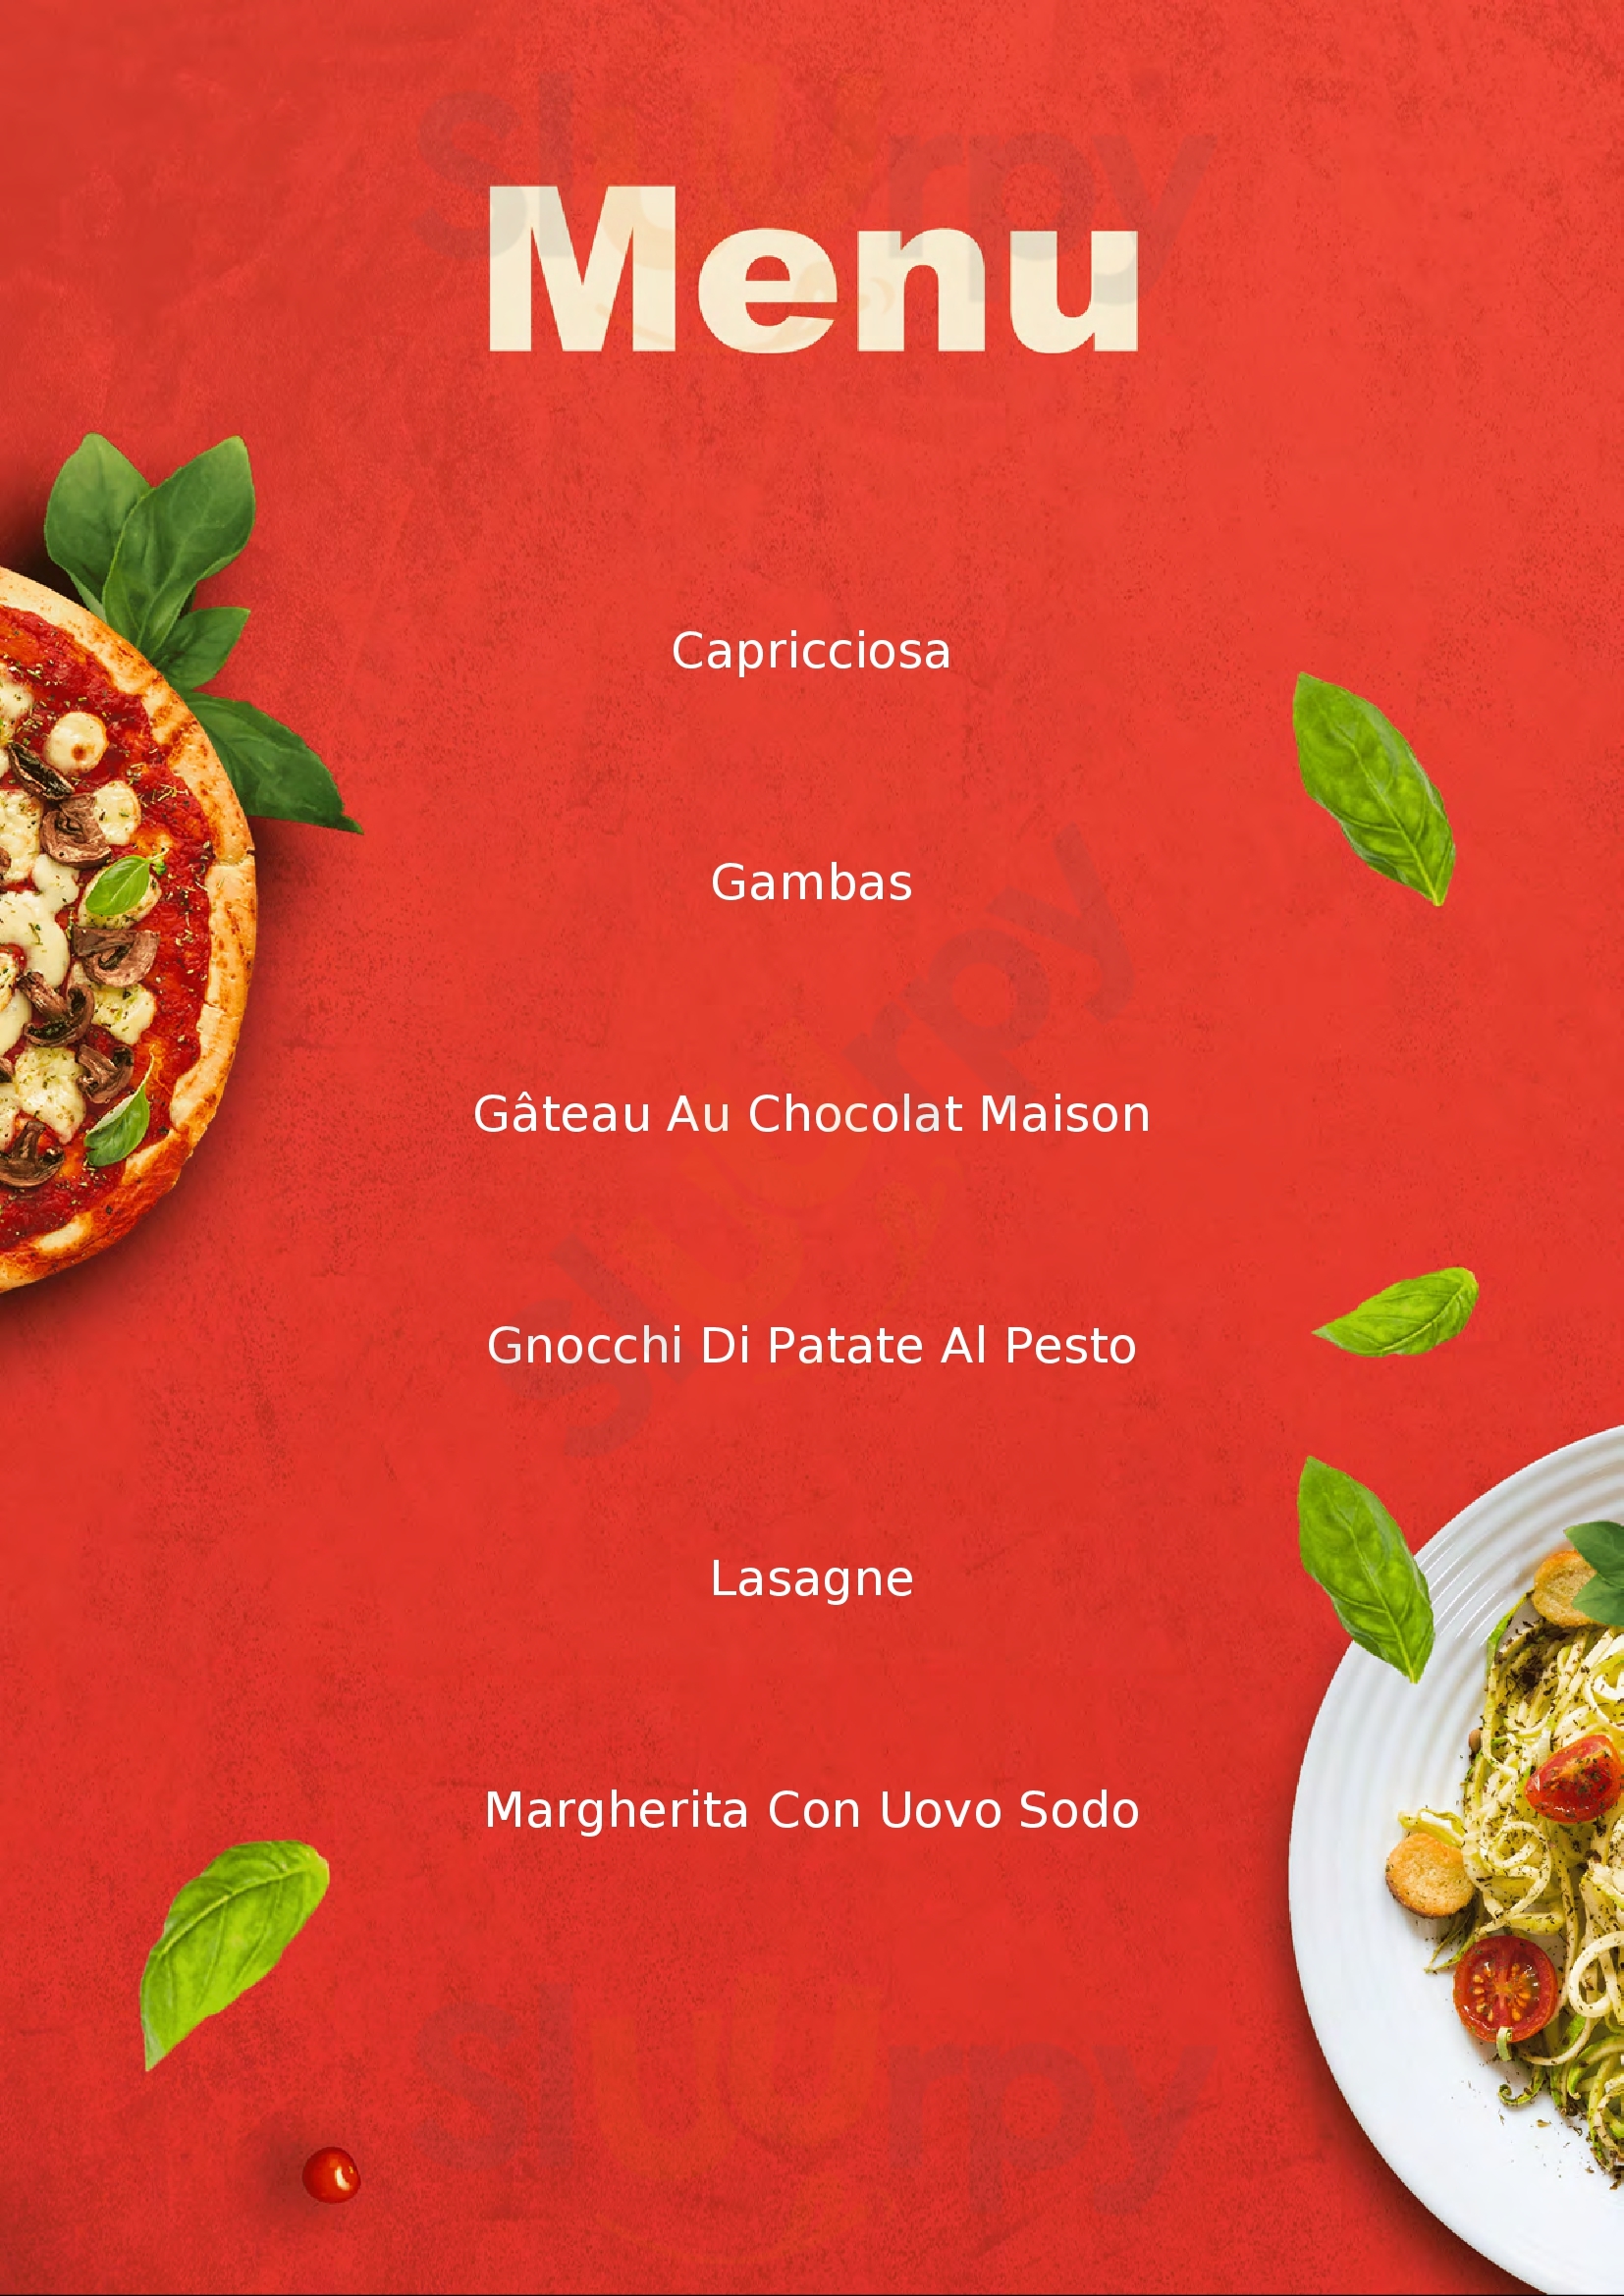 Pizza Hot Radda in Chianti menù 1 pagina